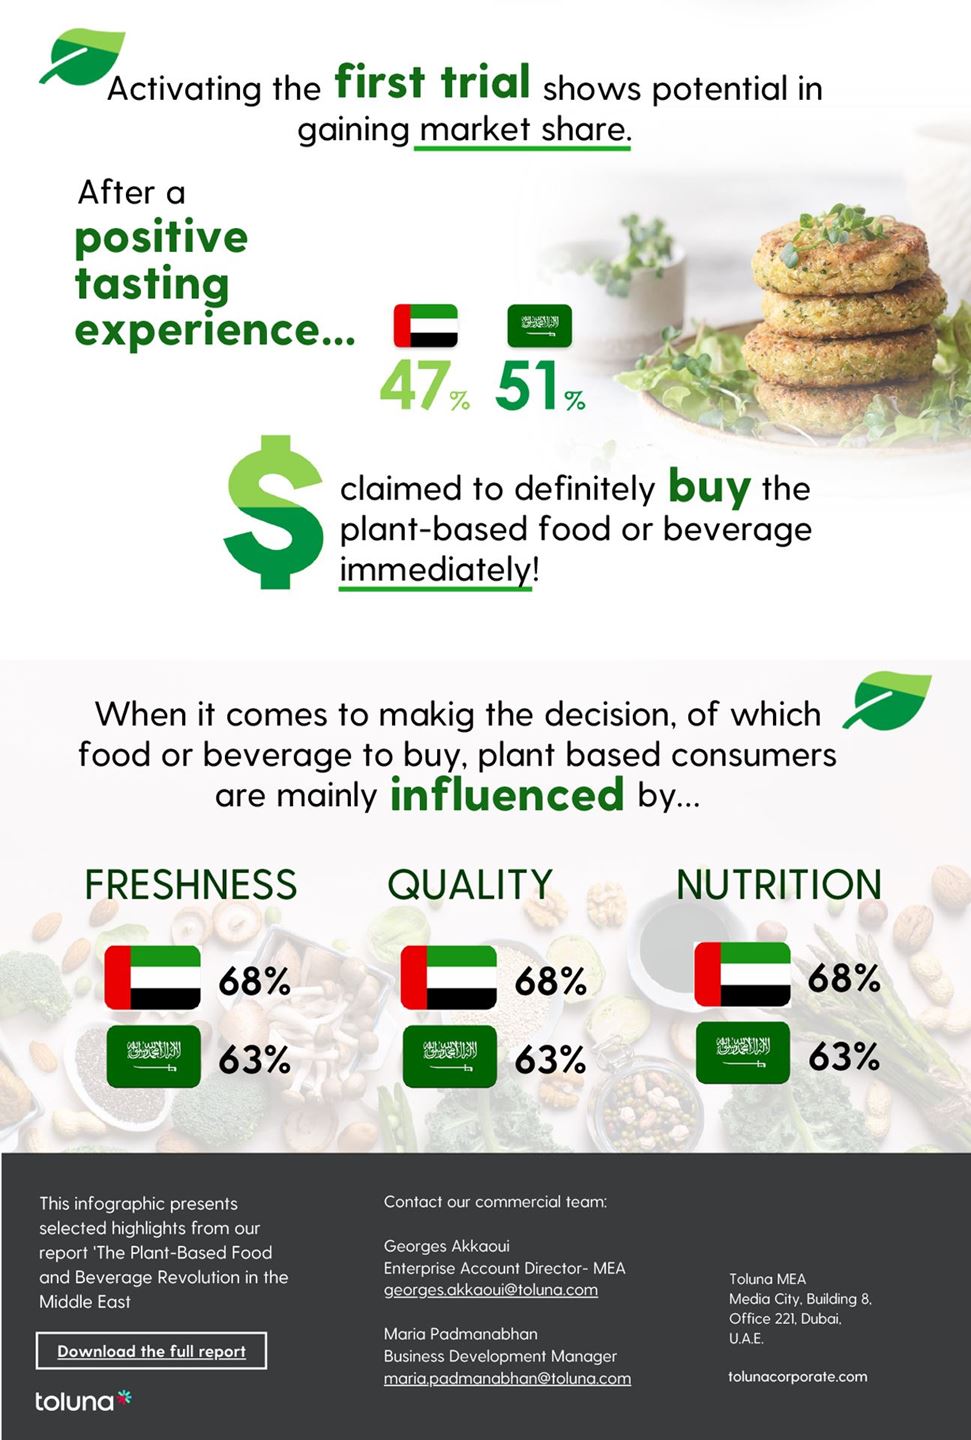 المستهلكون في الشرق الأوسط يتجهون الى الأغذية والمشروبات النباتية .. 50% يتوقعون زيادة في استهلاك الغذاء النباتي